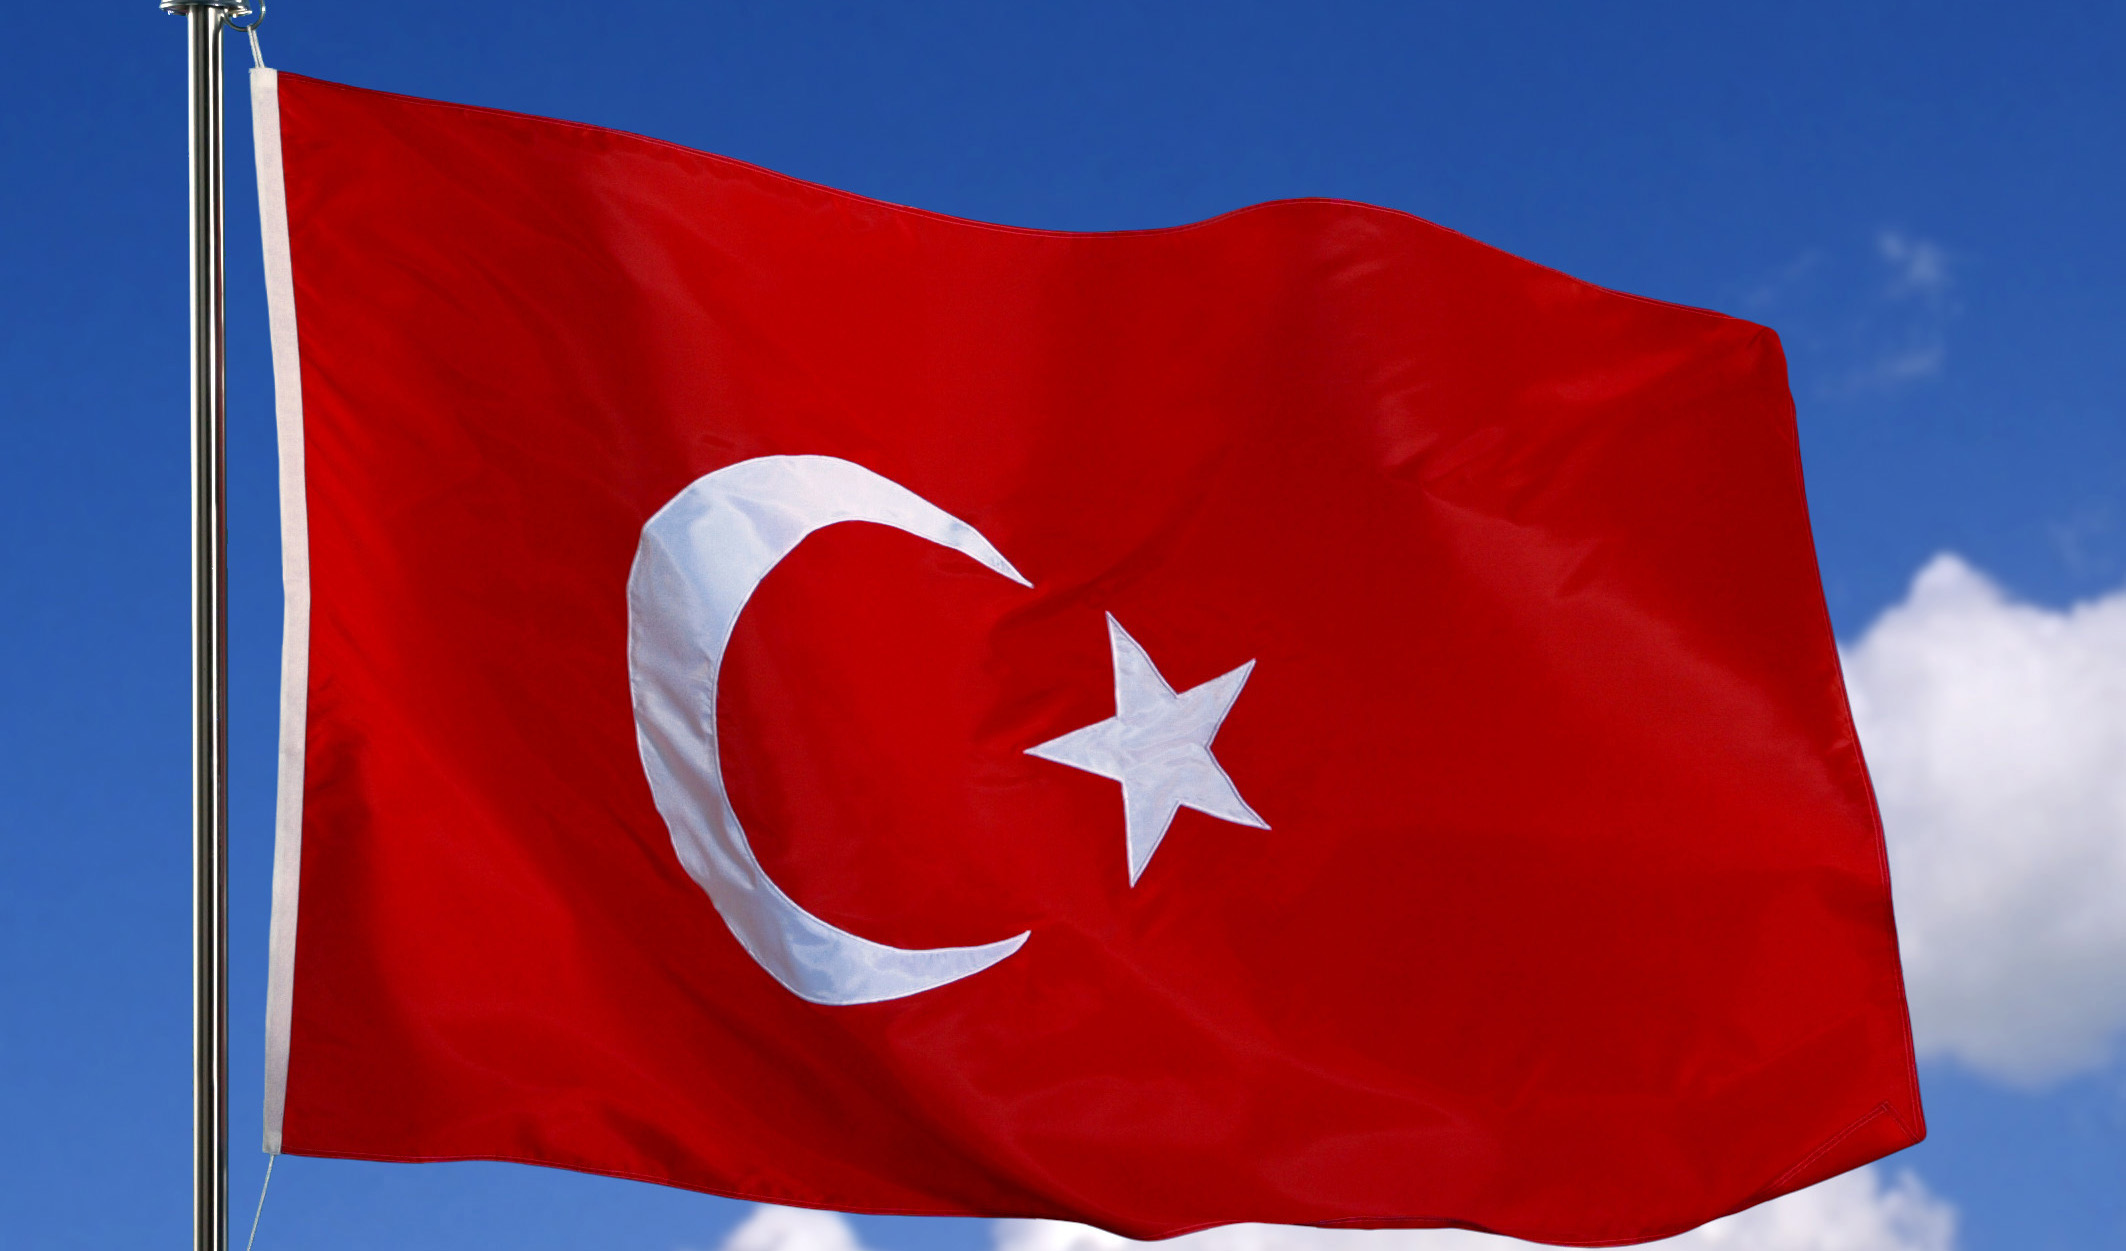 کاهش رتبه اعتباری ترکیه